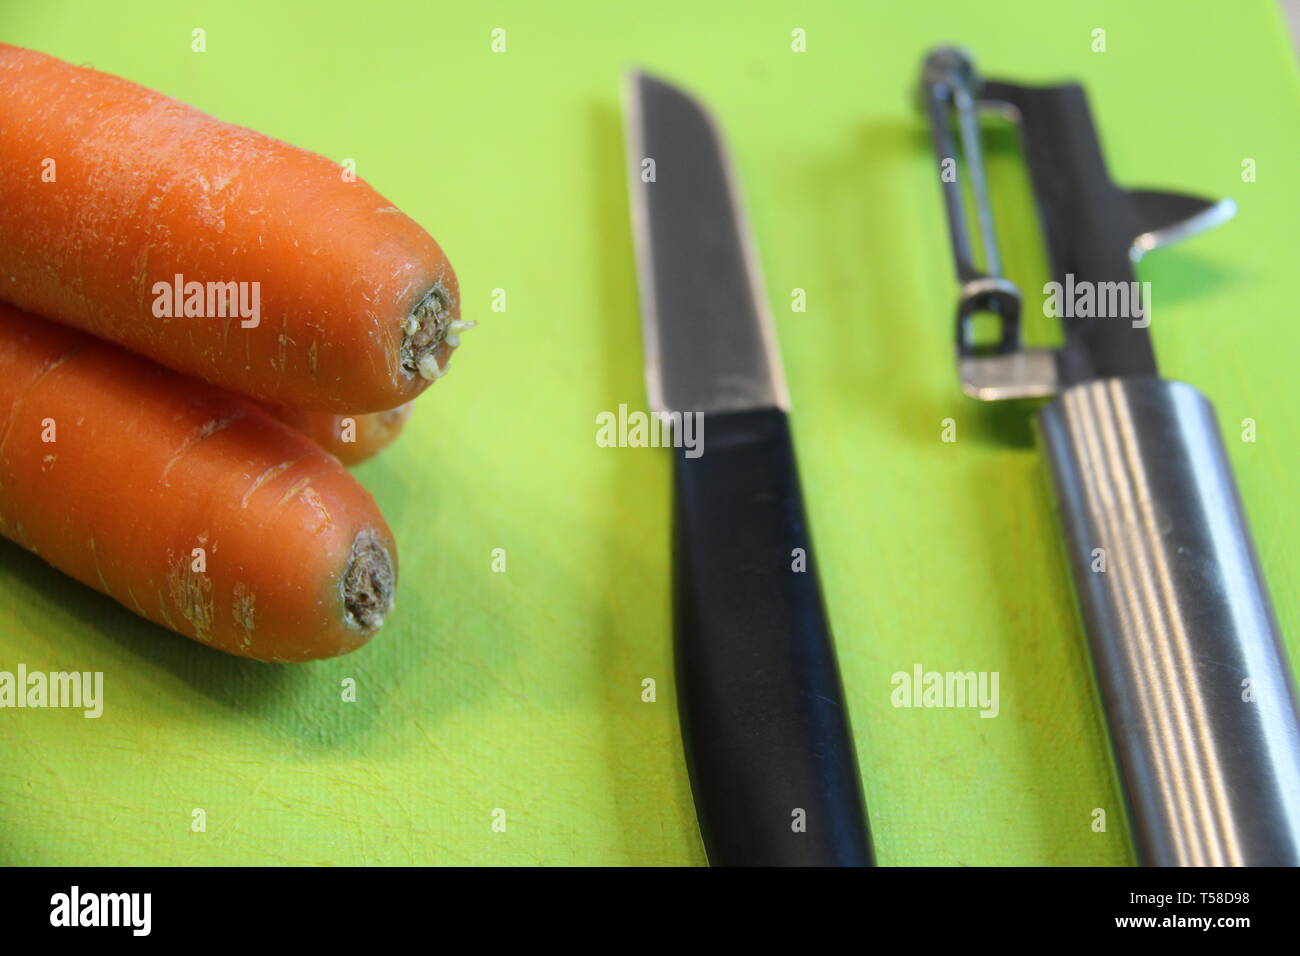 Zubereitung Essen Karotten Küche Stock Photo